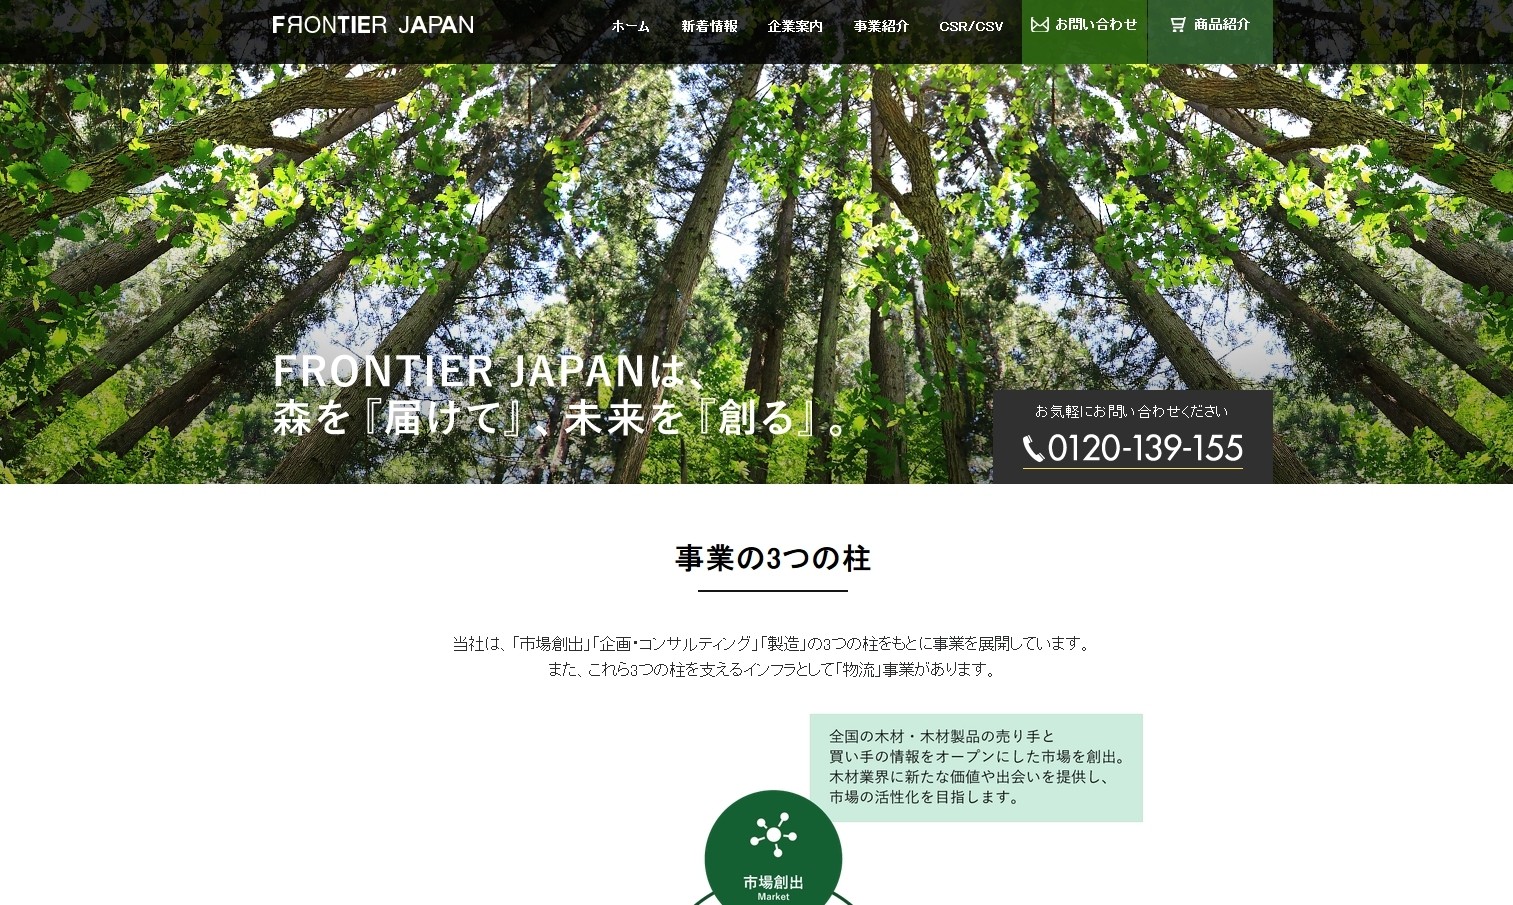 FRONTIER JAPAN株式会社のFRONTIER JAPAN株式会社サービス